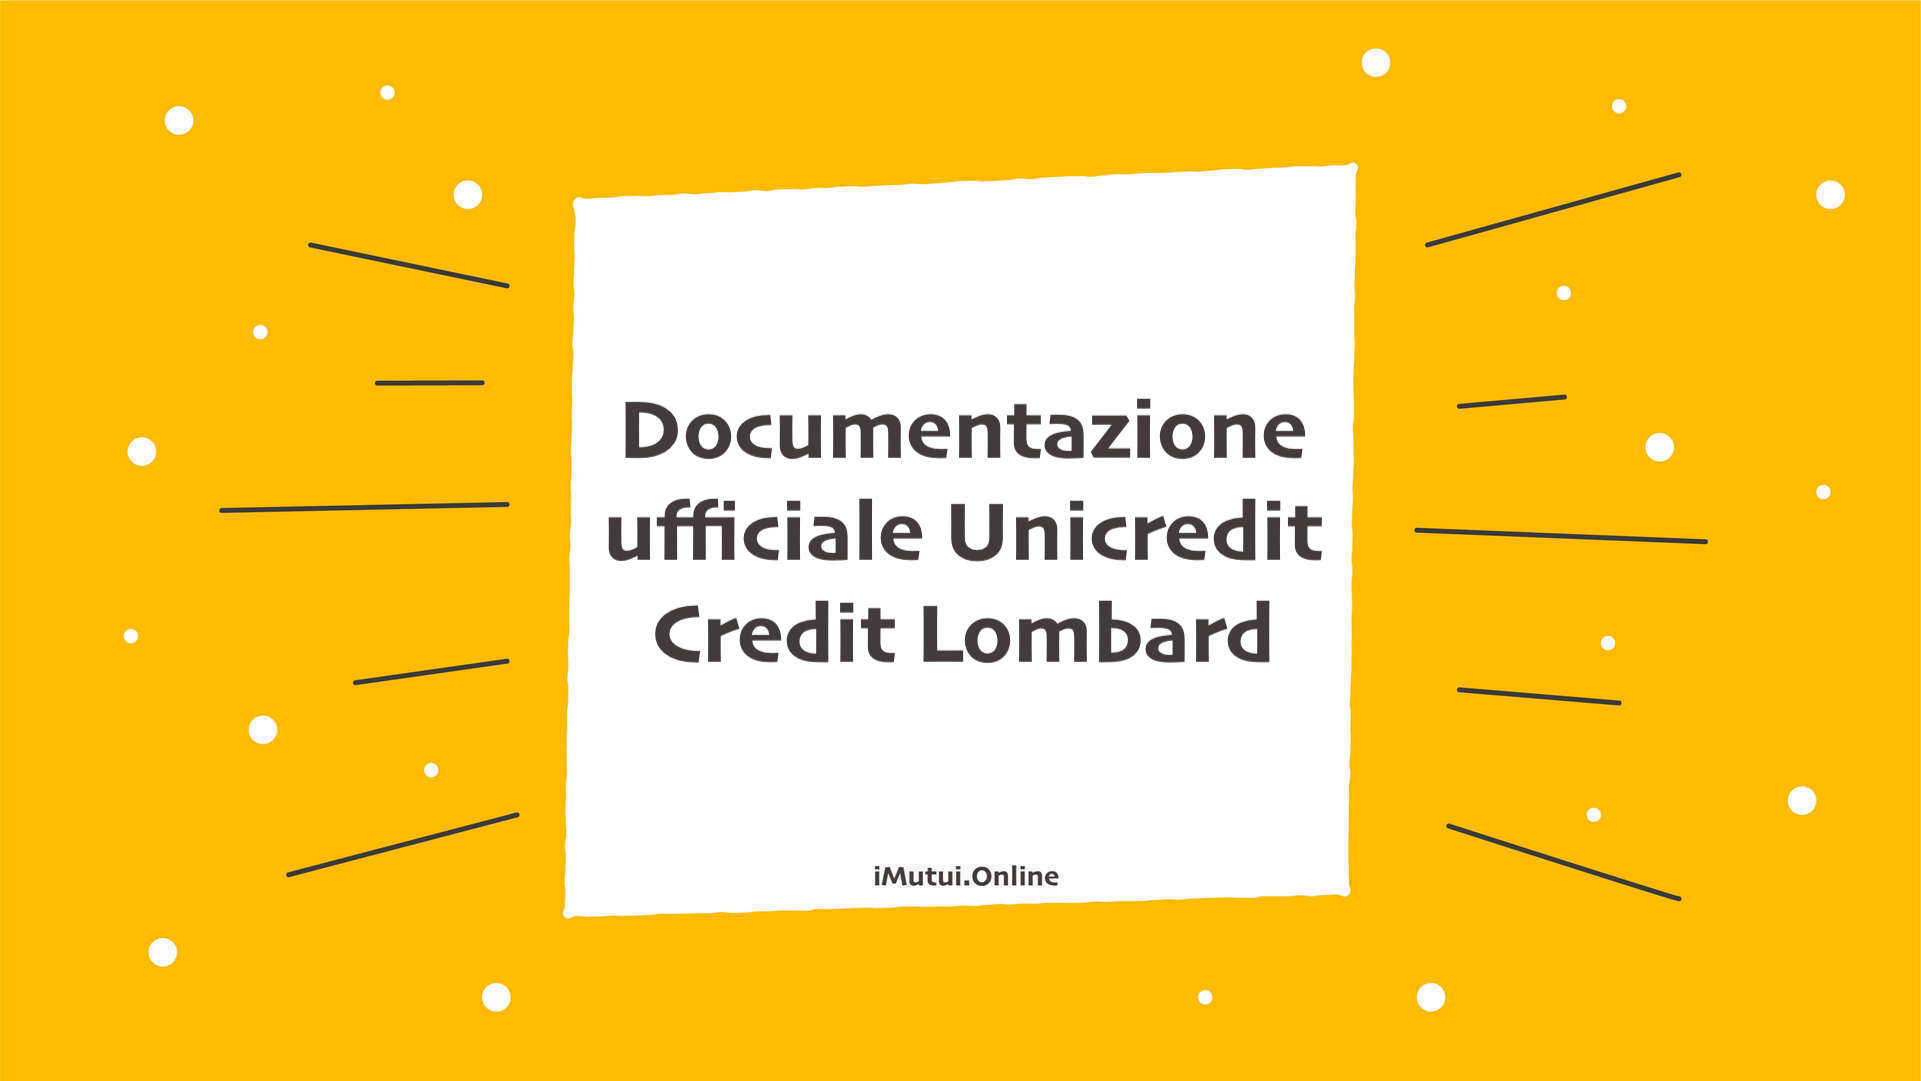 Documentazione ufficiale Unicredit Credit Lombard